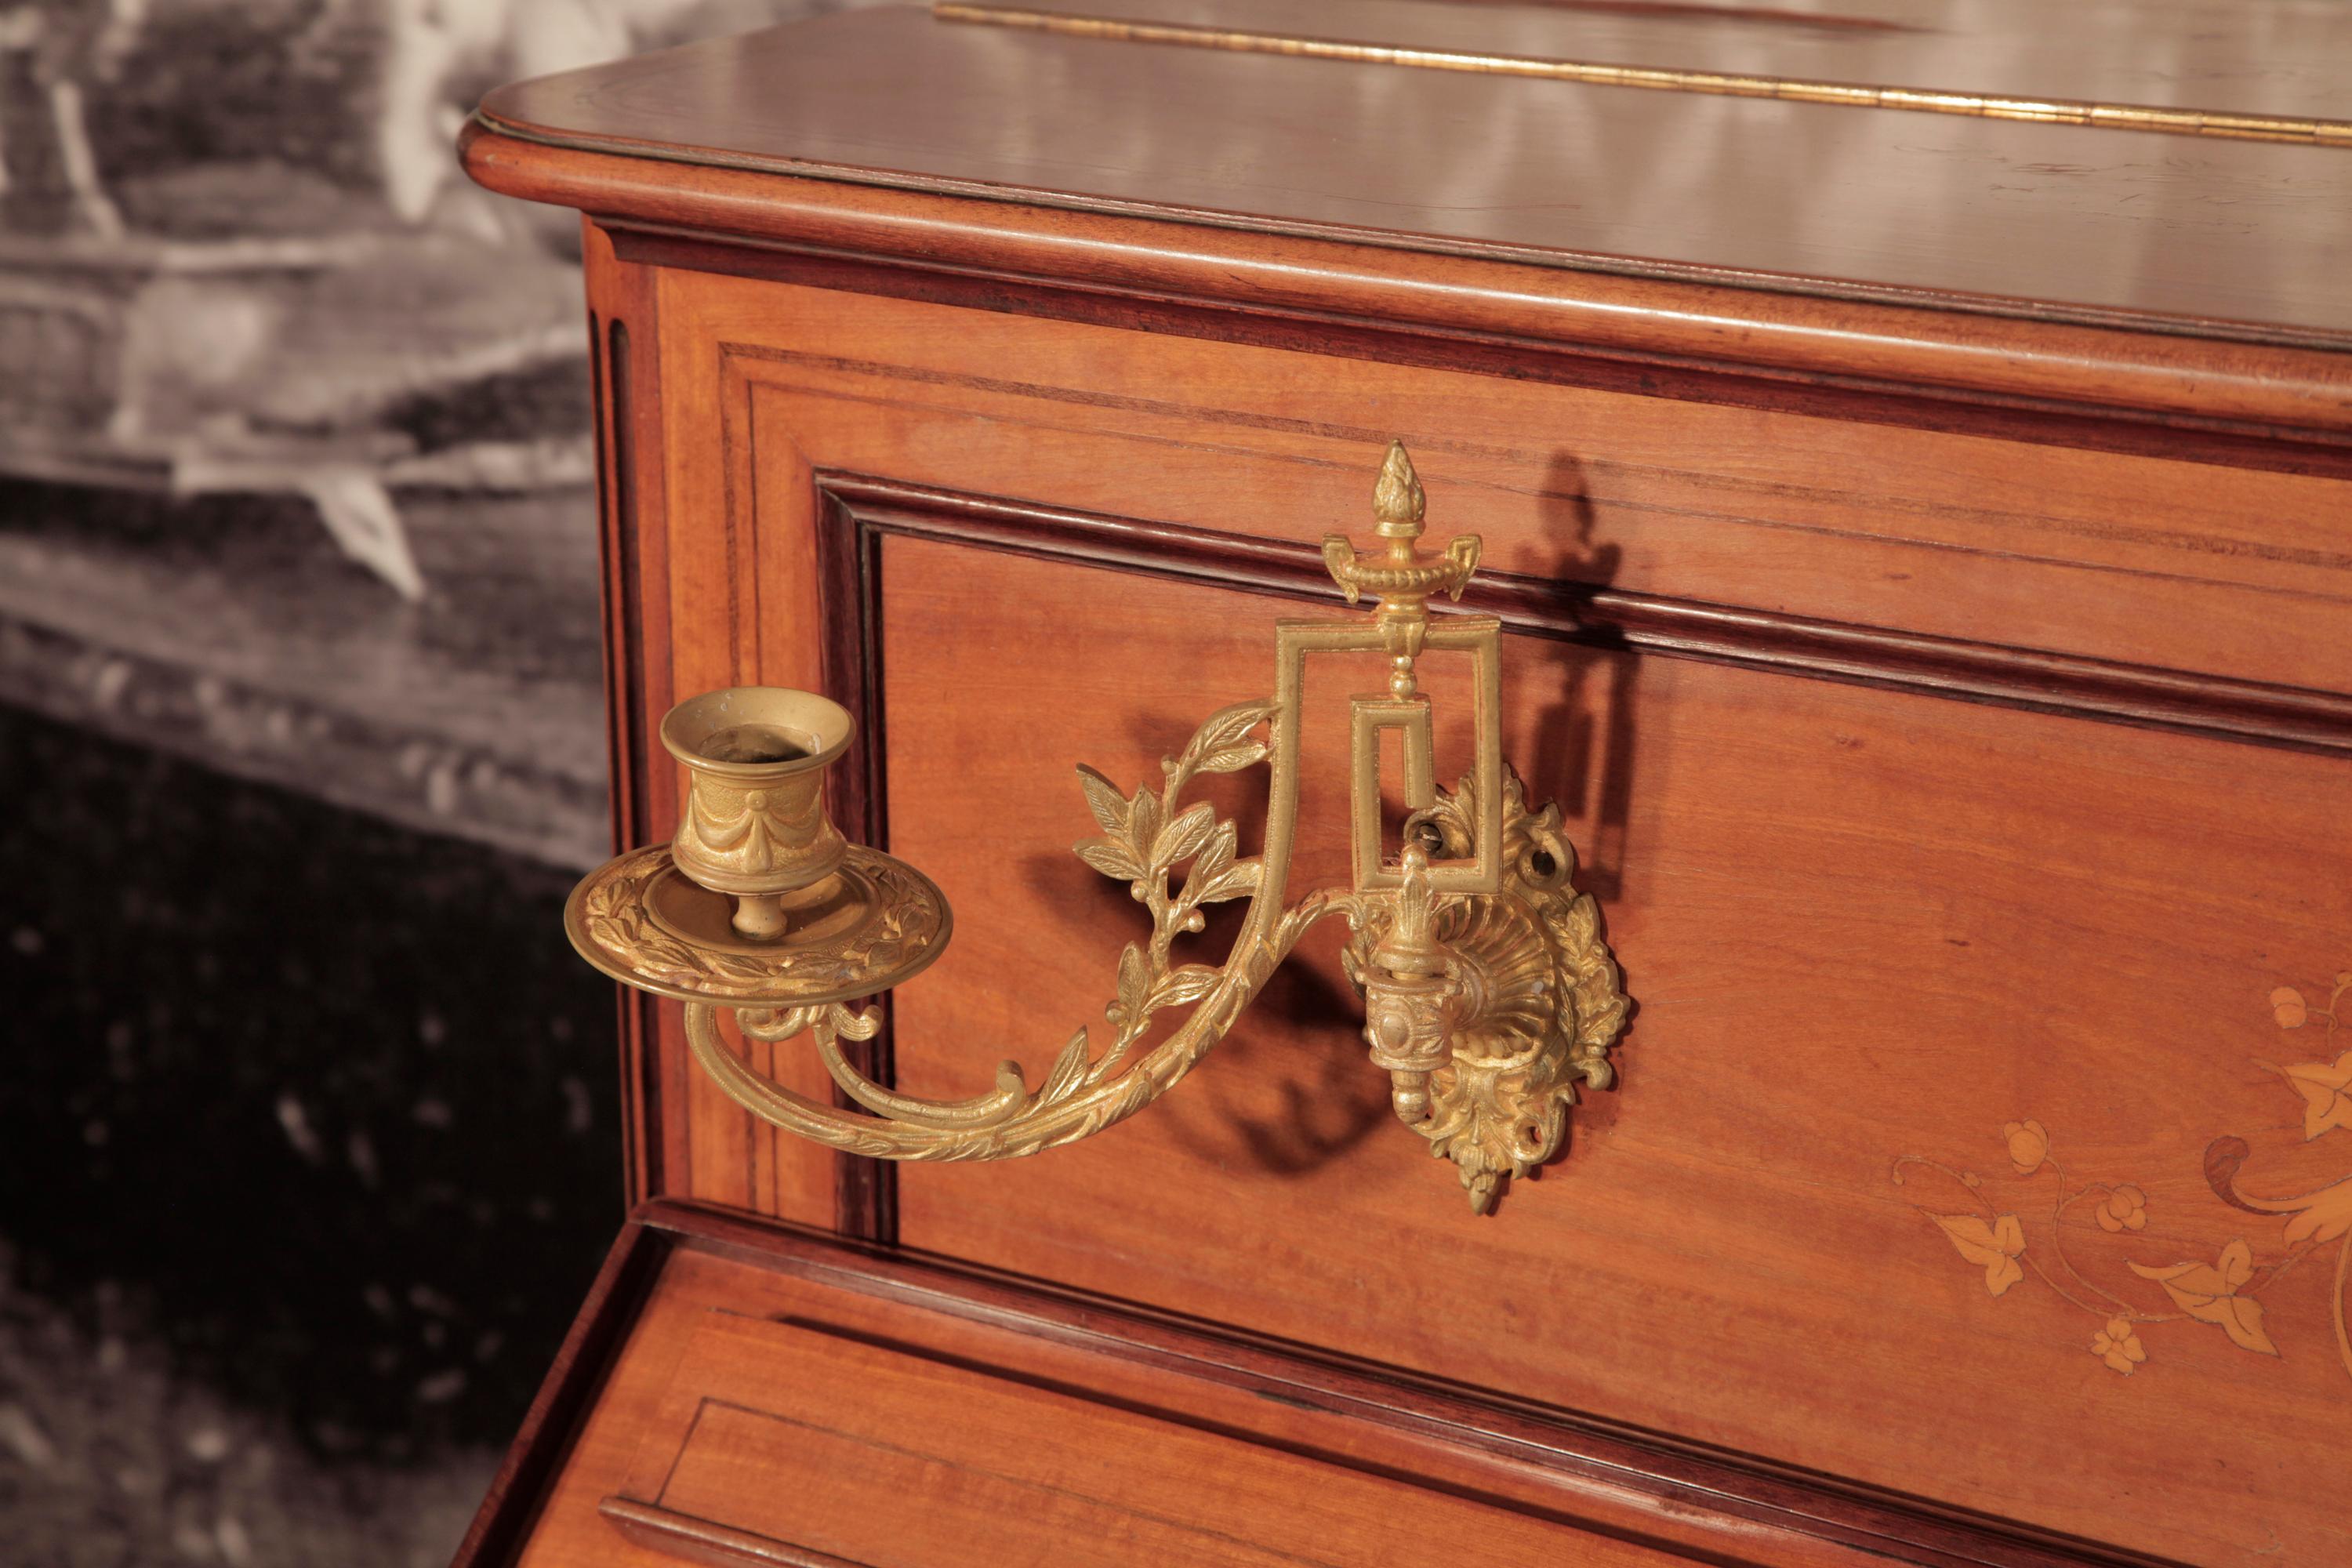 Un piano droit Pleyel de 1893 avec un meuble en bois satiné.
L'ensemble de l'armoire présente des incrustations complexes de style néocalassique. Les panneaux avant présentent un motif symétrique d'acanthes, de fleurs, d'anthemions et de feuillages